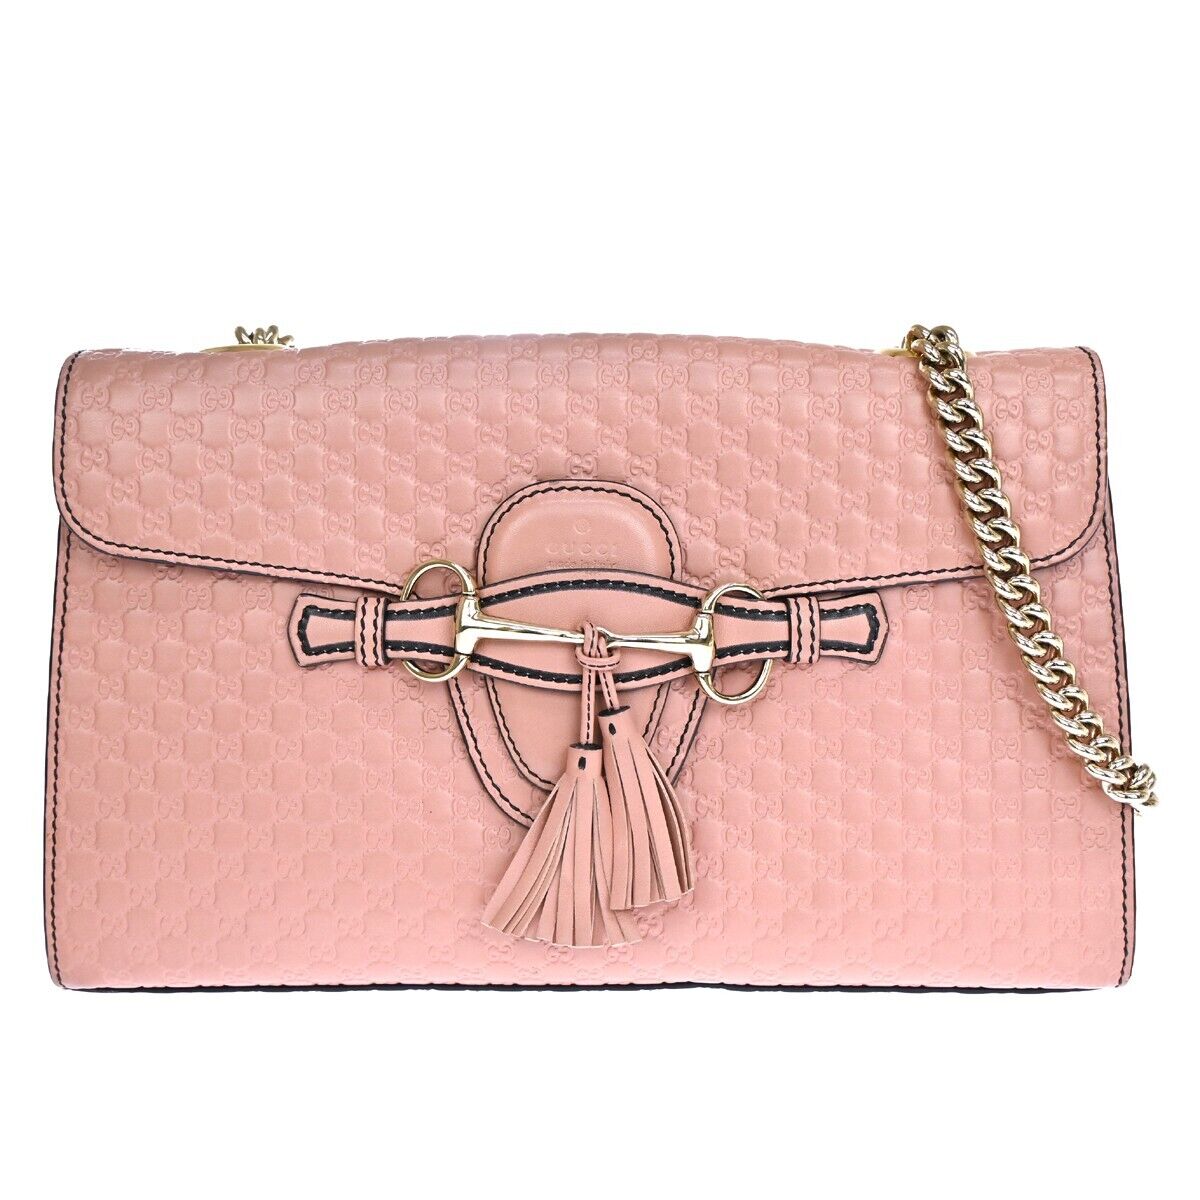 Gucci Emily Pink Leather Shoulder Bag ()